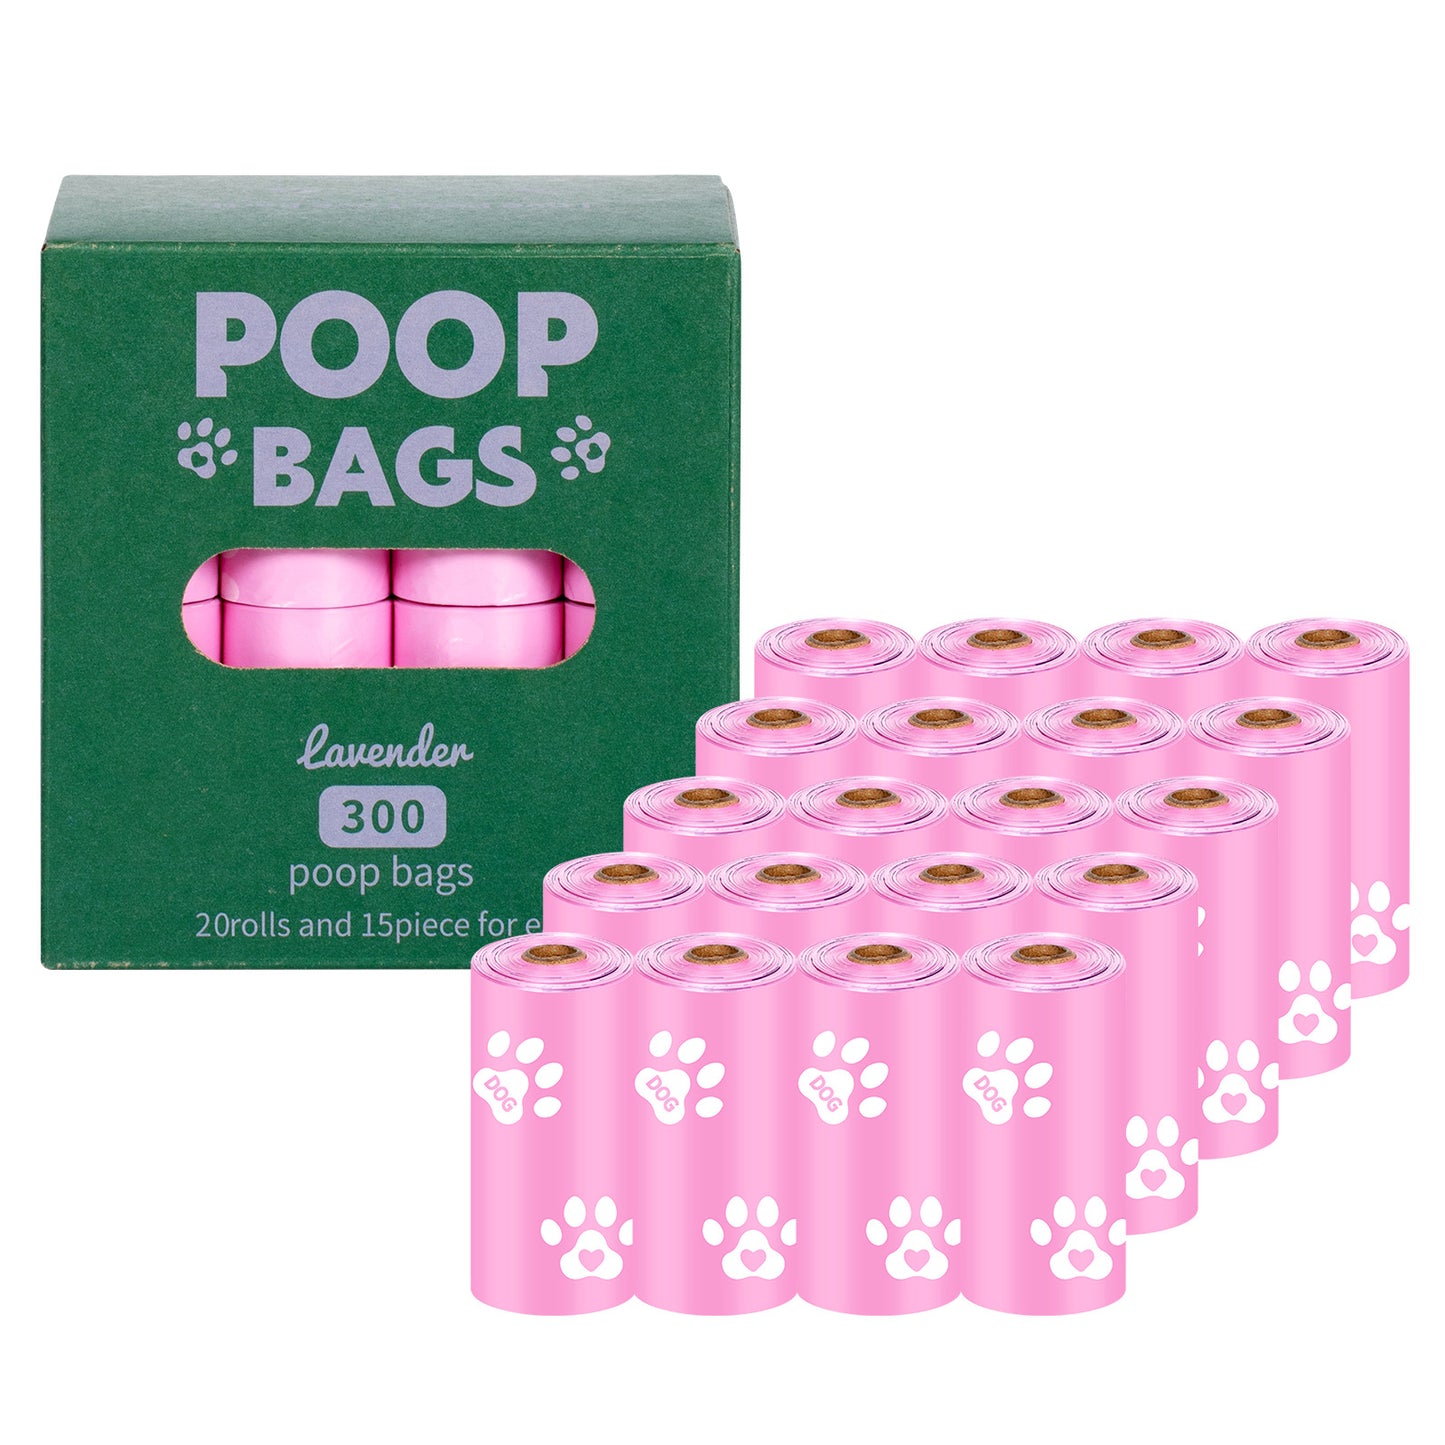 粉色 環保可降解寵物便便垃圾袋